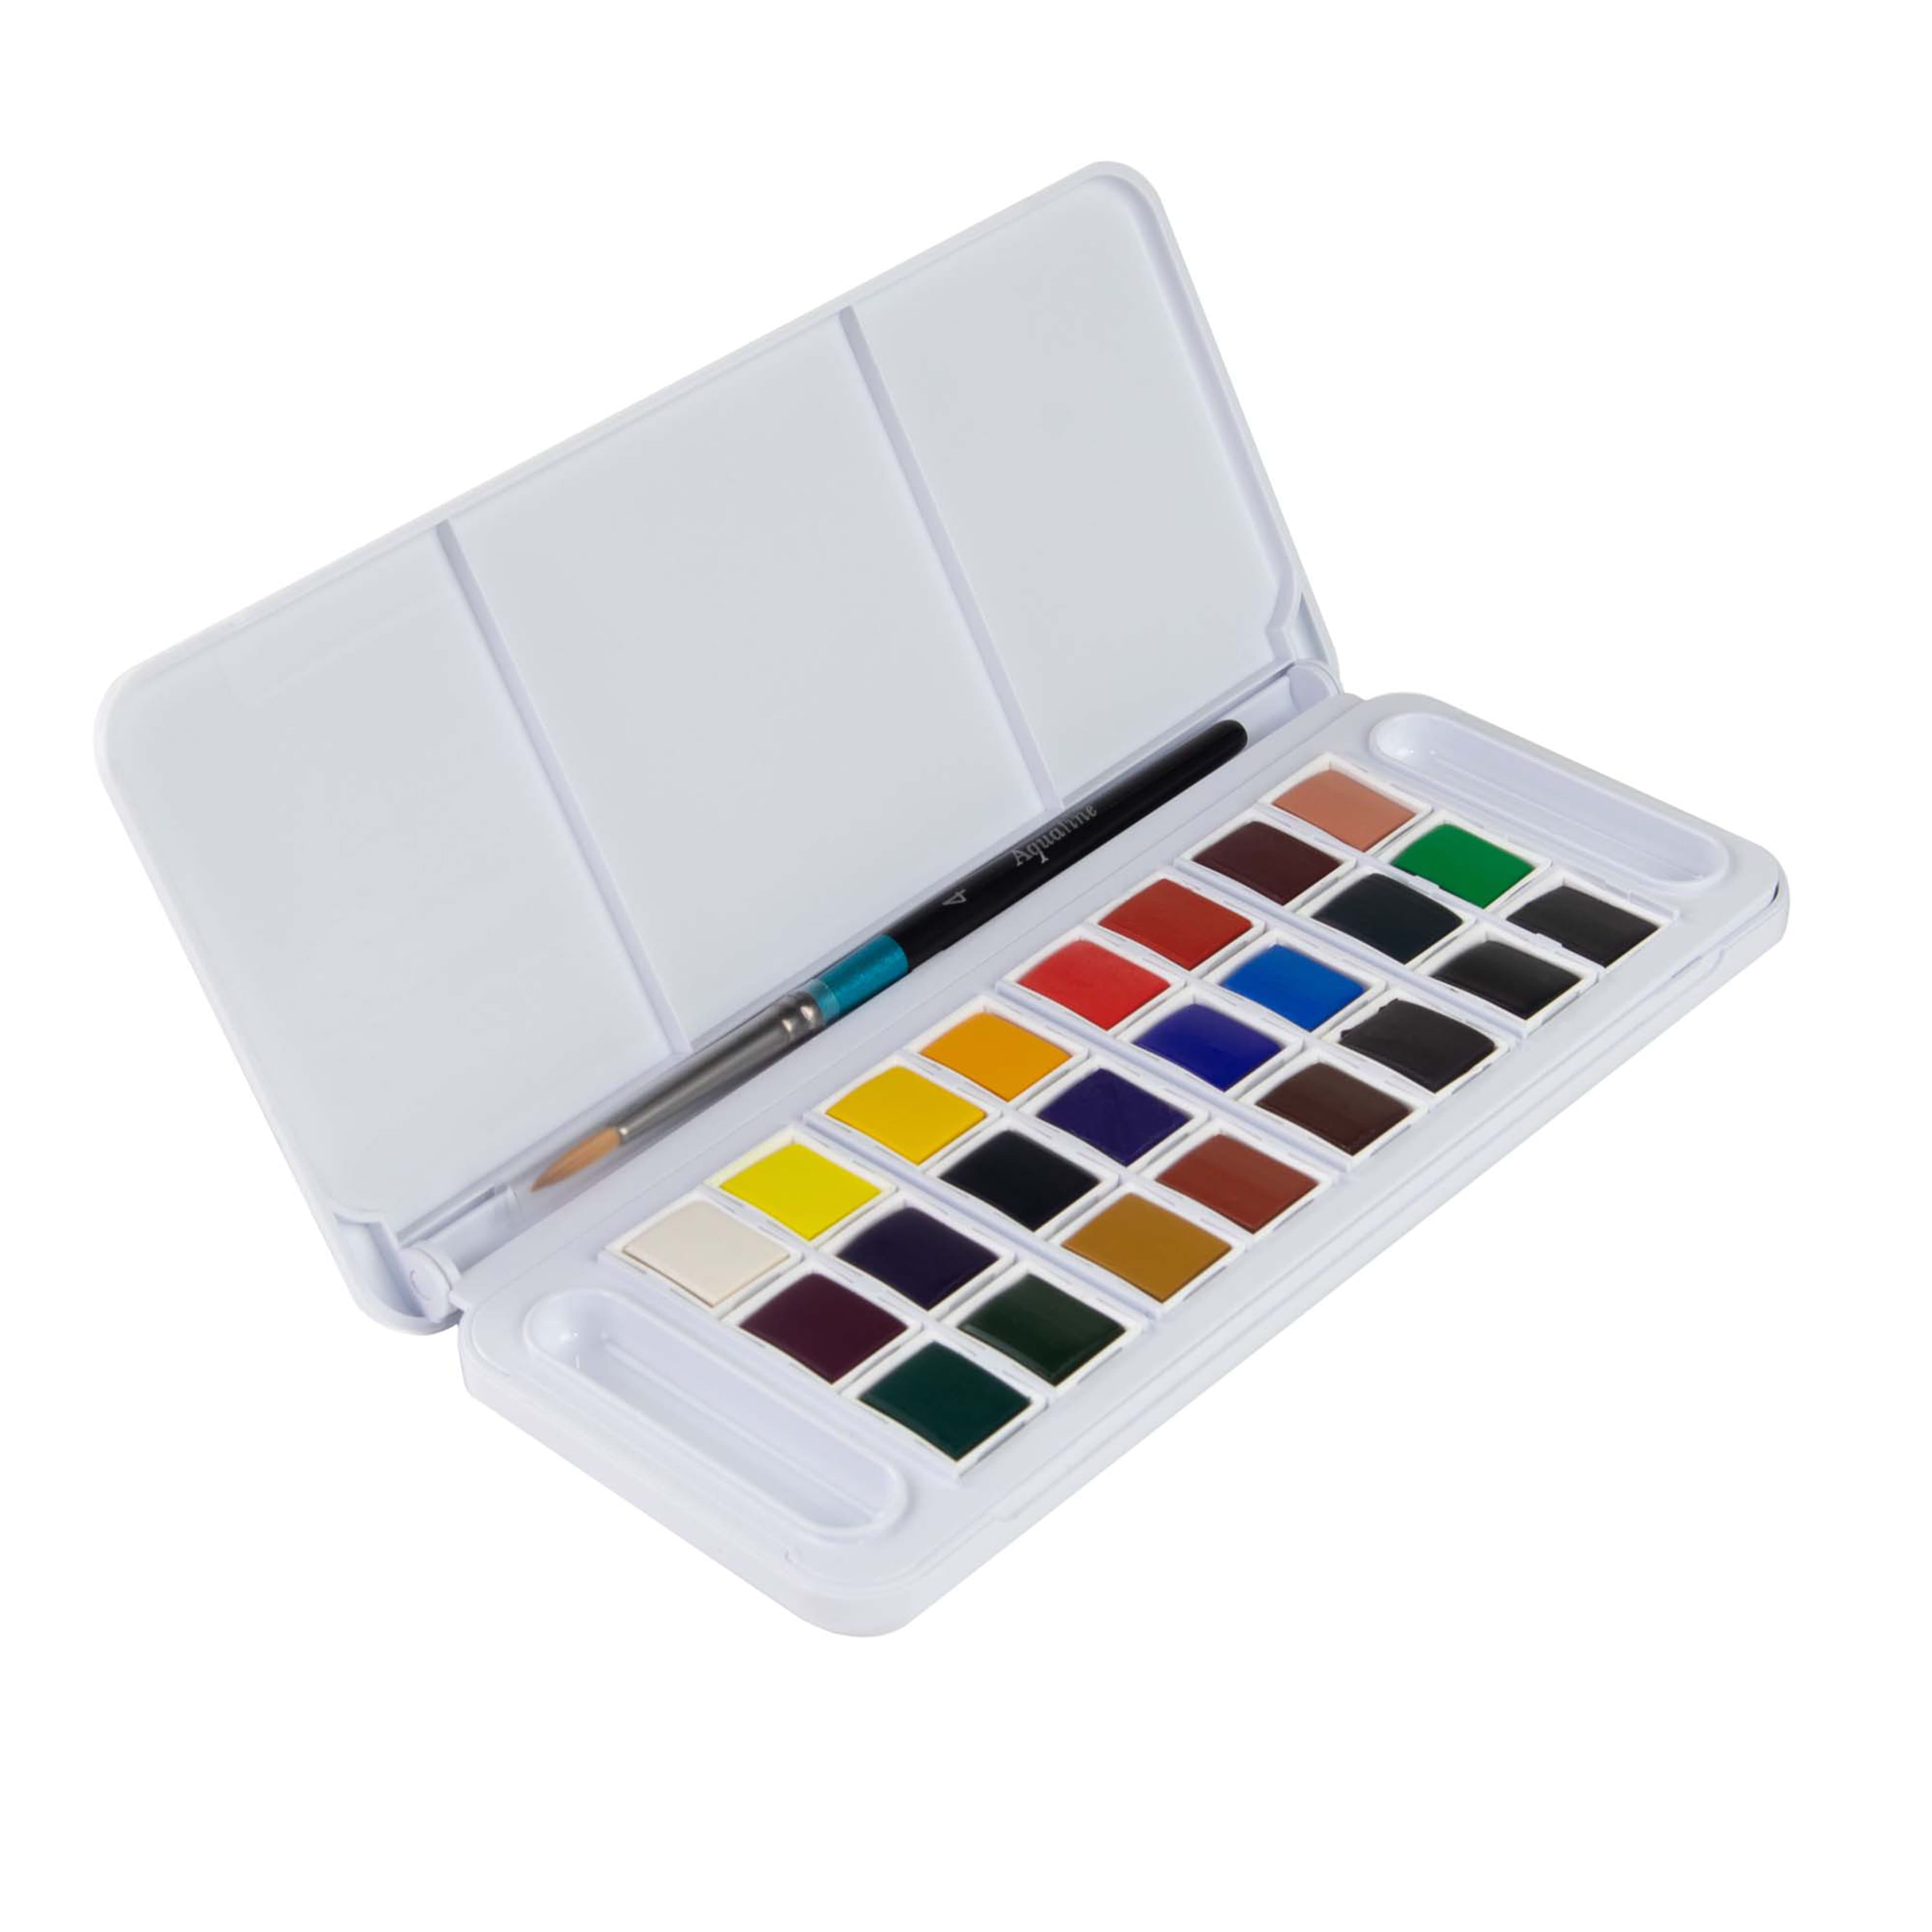 Daler Rowney Aquafine Watercolor Paints - Watercolor Paint Tubes for  Watercolor Paper and More - Watercolor Tubes for Artists and Students -  Premium